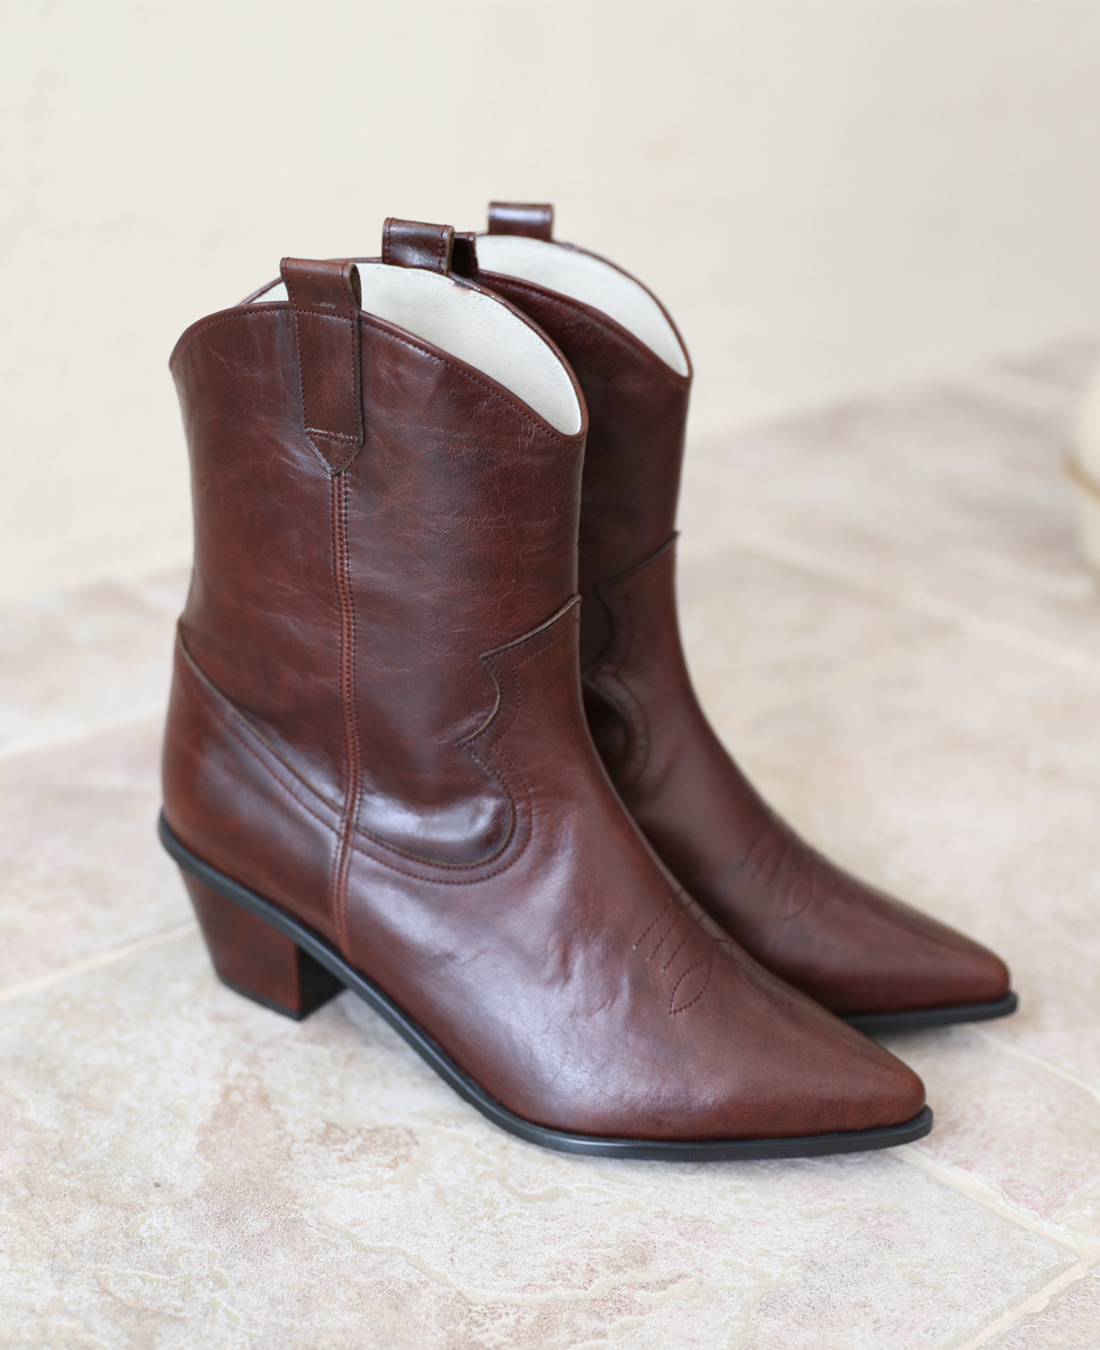 Low Western Boots (Vintage Brown)